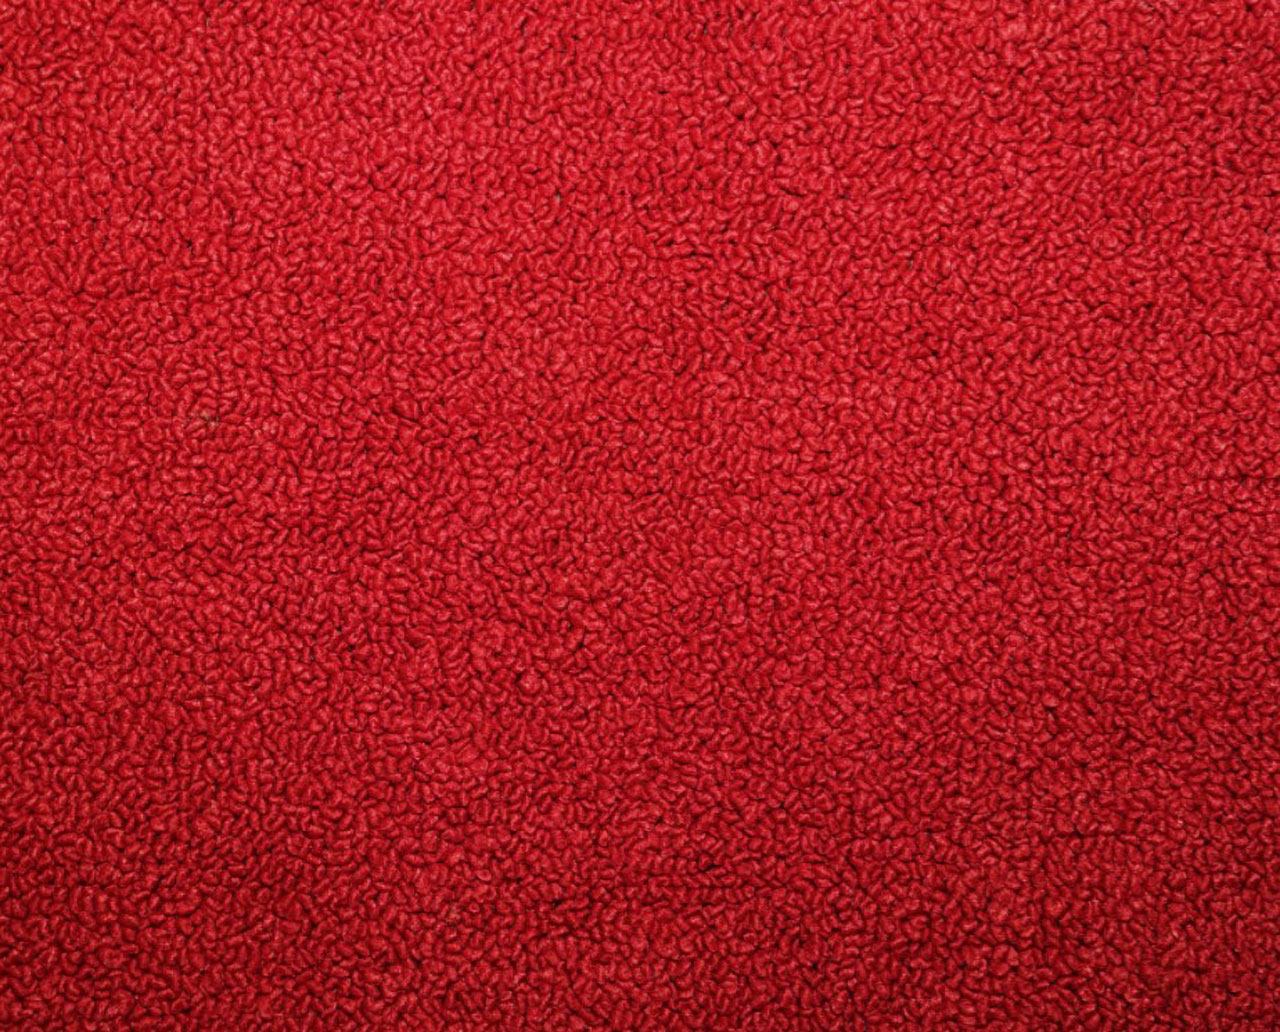 Holden Kingswood HK Kingswood Sedan 12F Goya Red Carpet (Image 1 of 1)